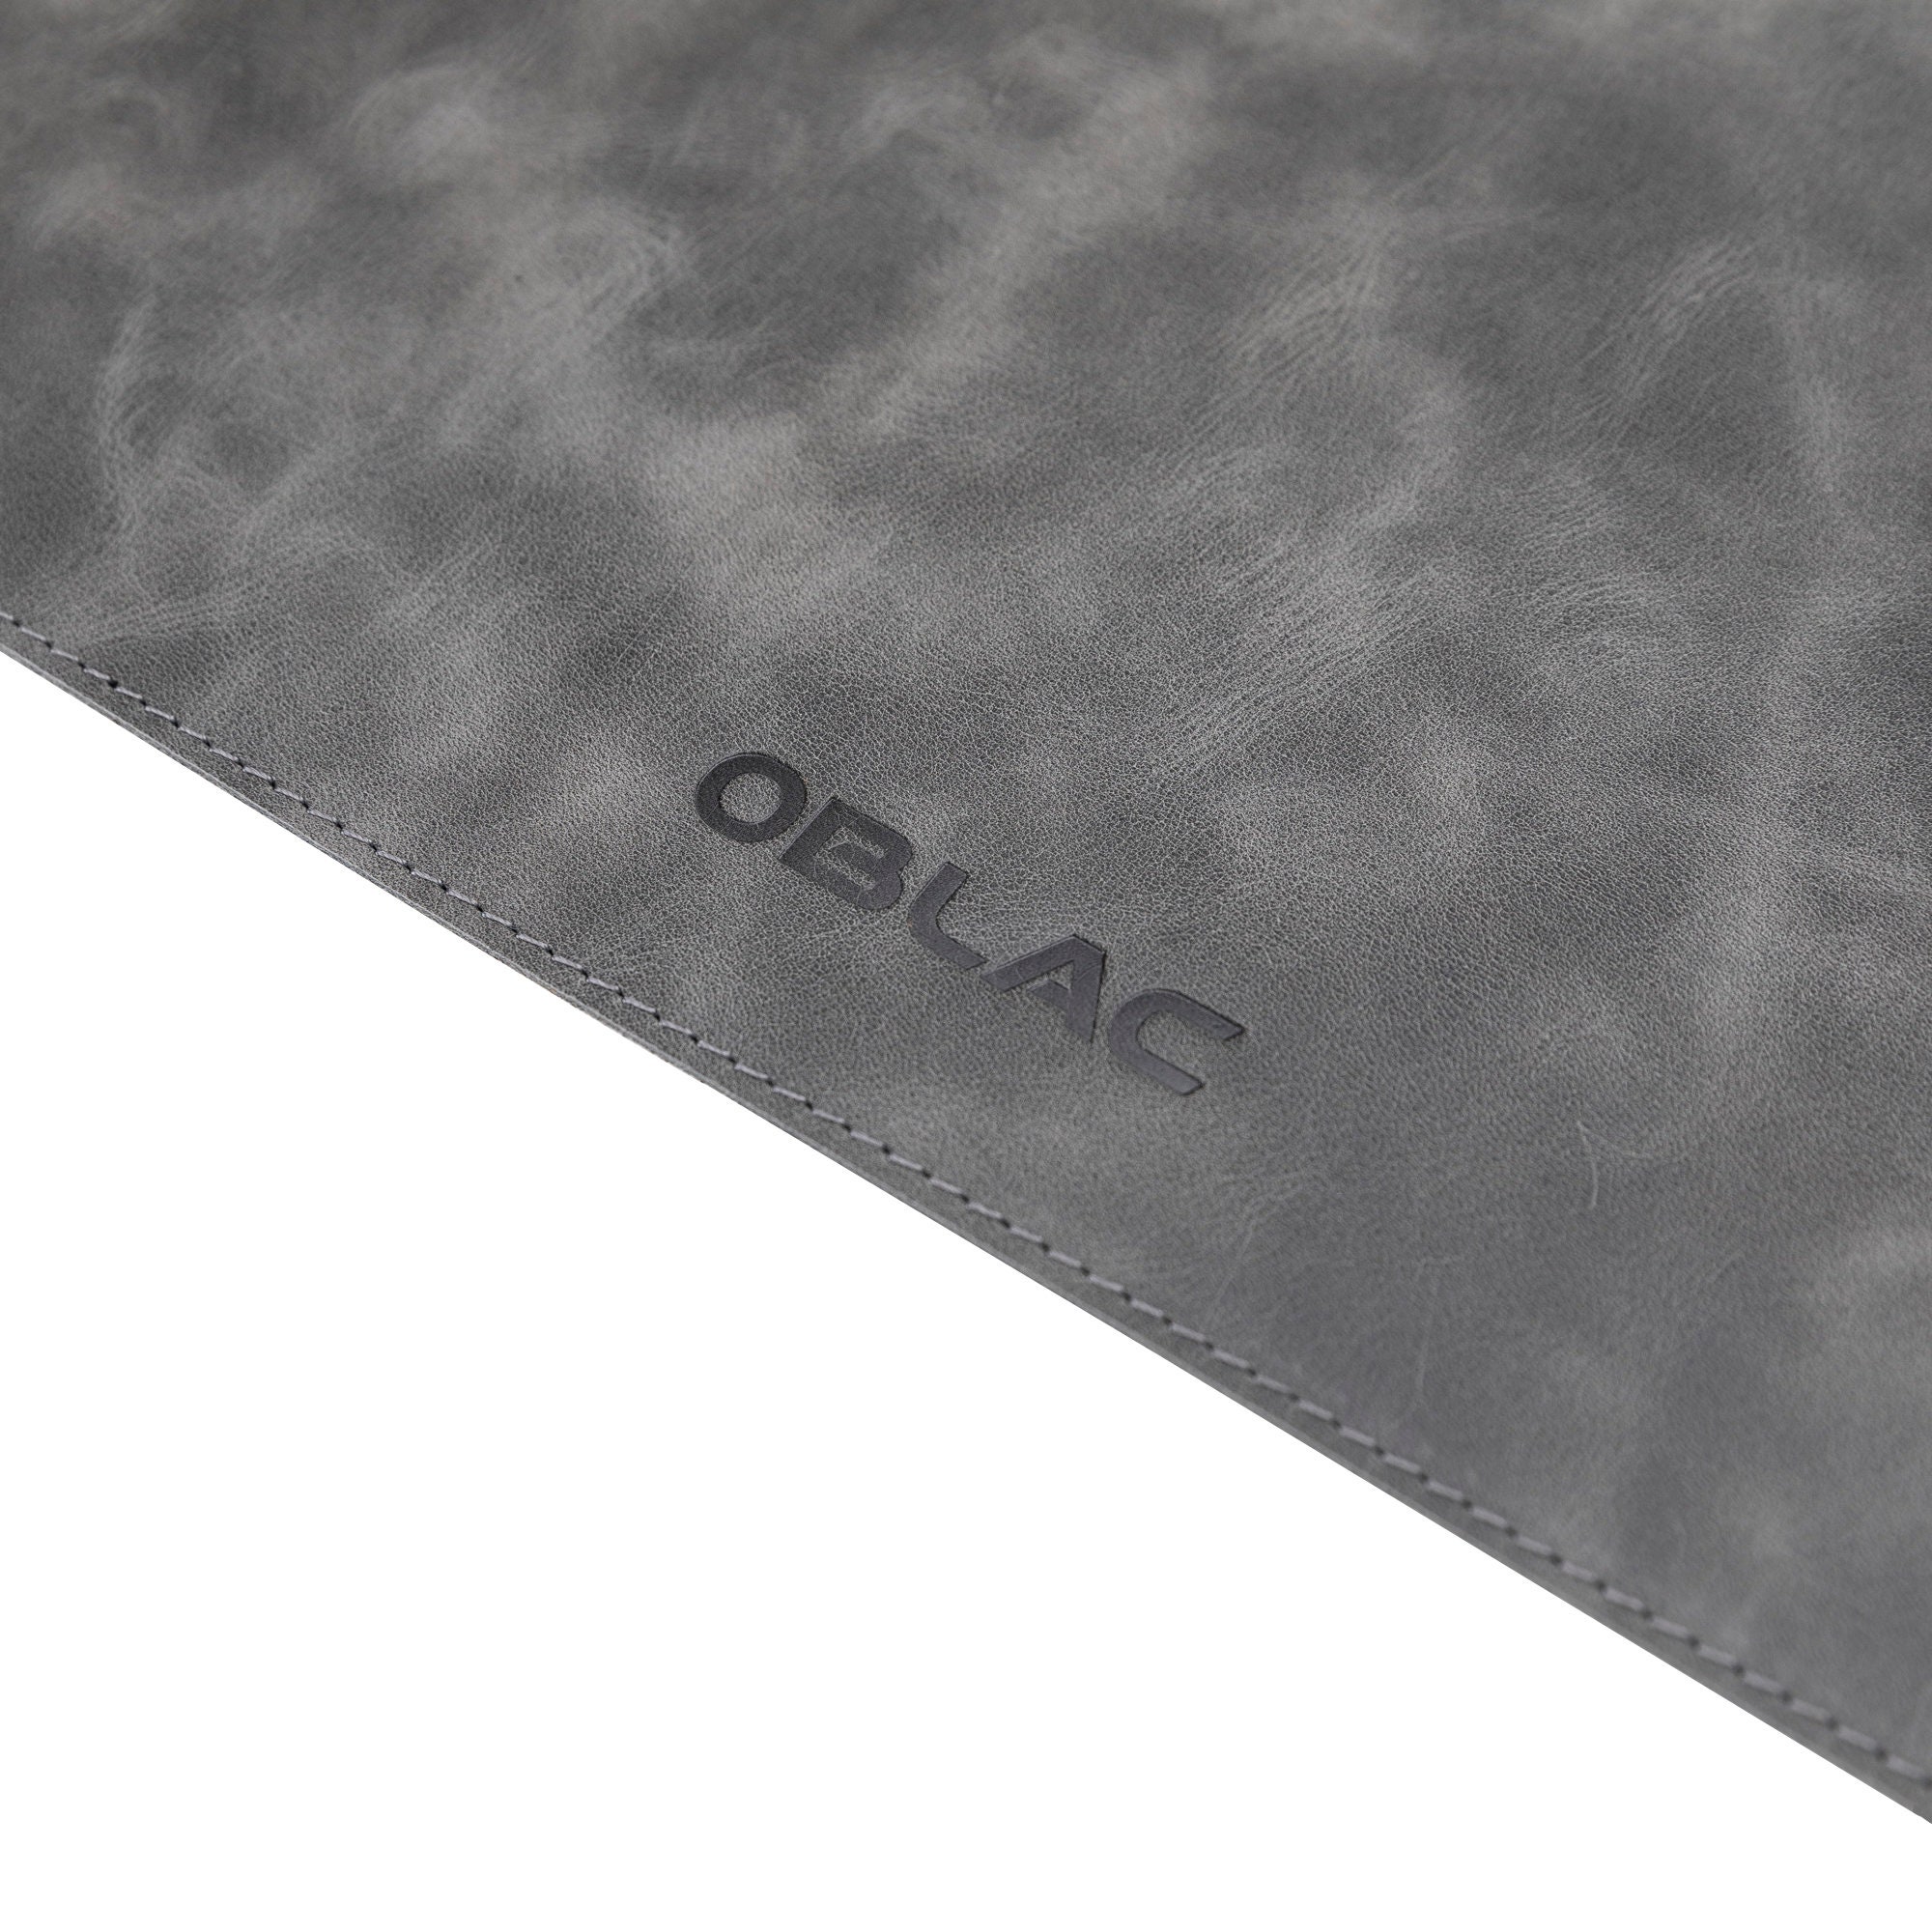 Desk mat in gray full calf leather desk pad best office gift | Etsy